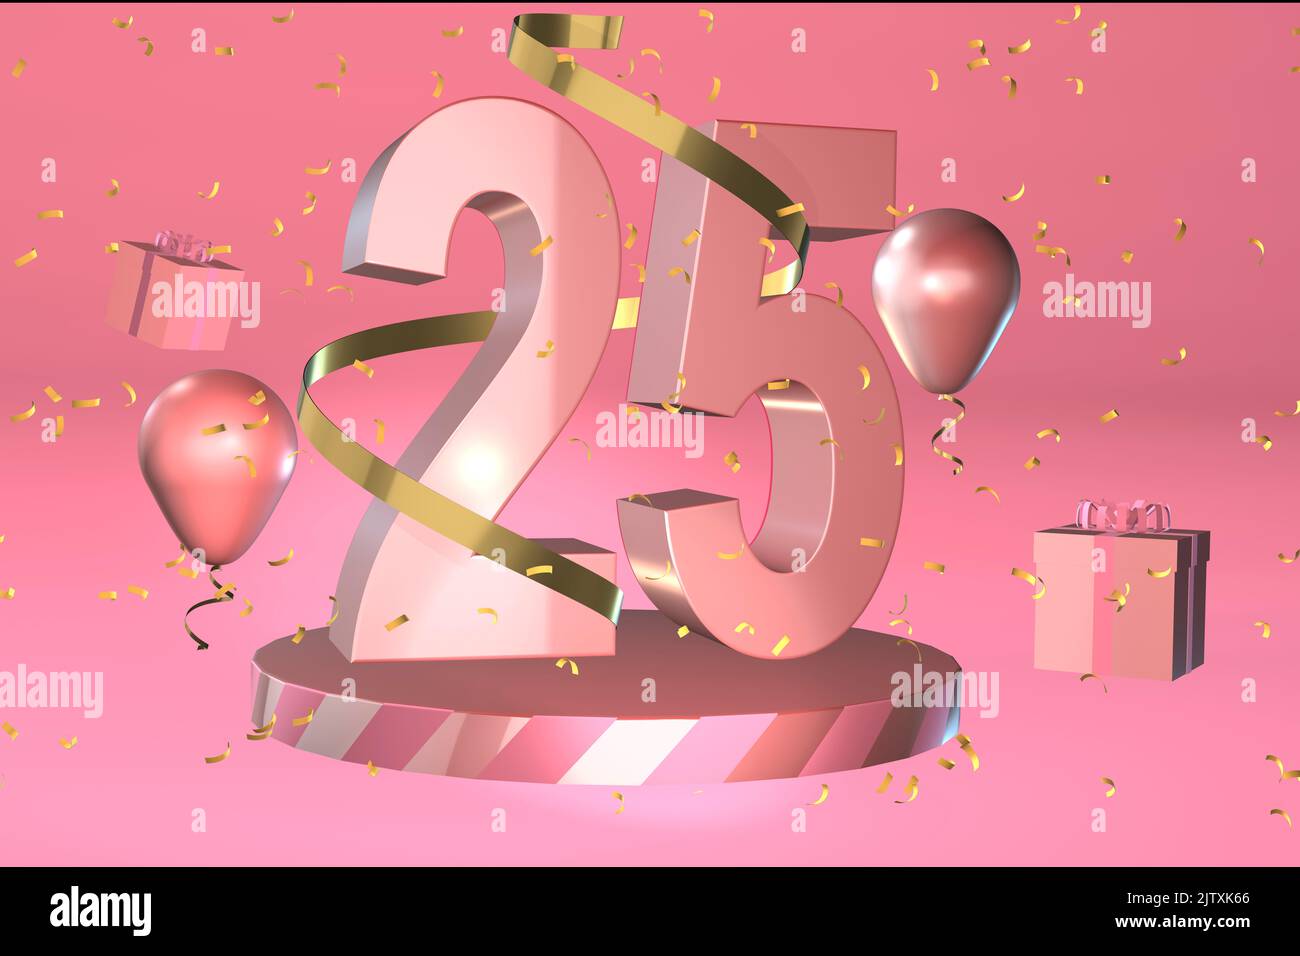 25th fond d'anniversaire bannière 25th fonds d'anniversaire convient pour 25 ou vingt-cinq vingt-cinquième anniversaire carte de célébration ou invitation Banque D'Images